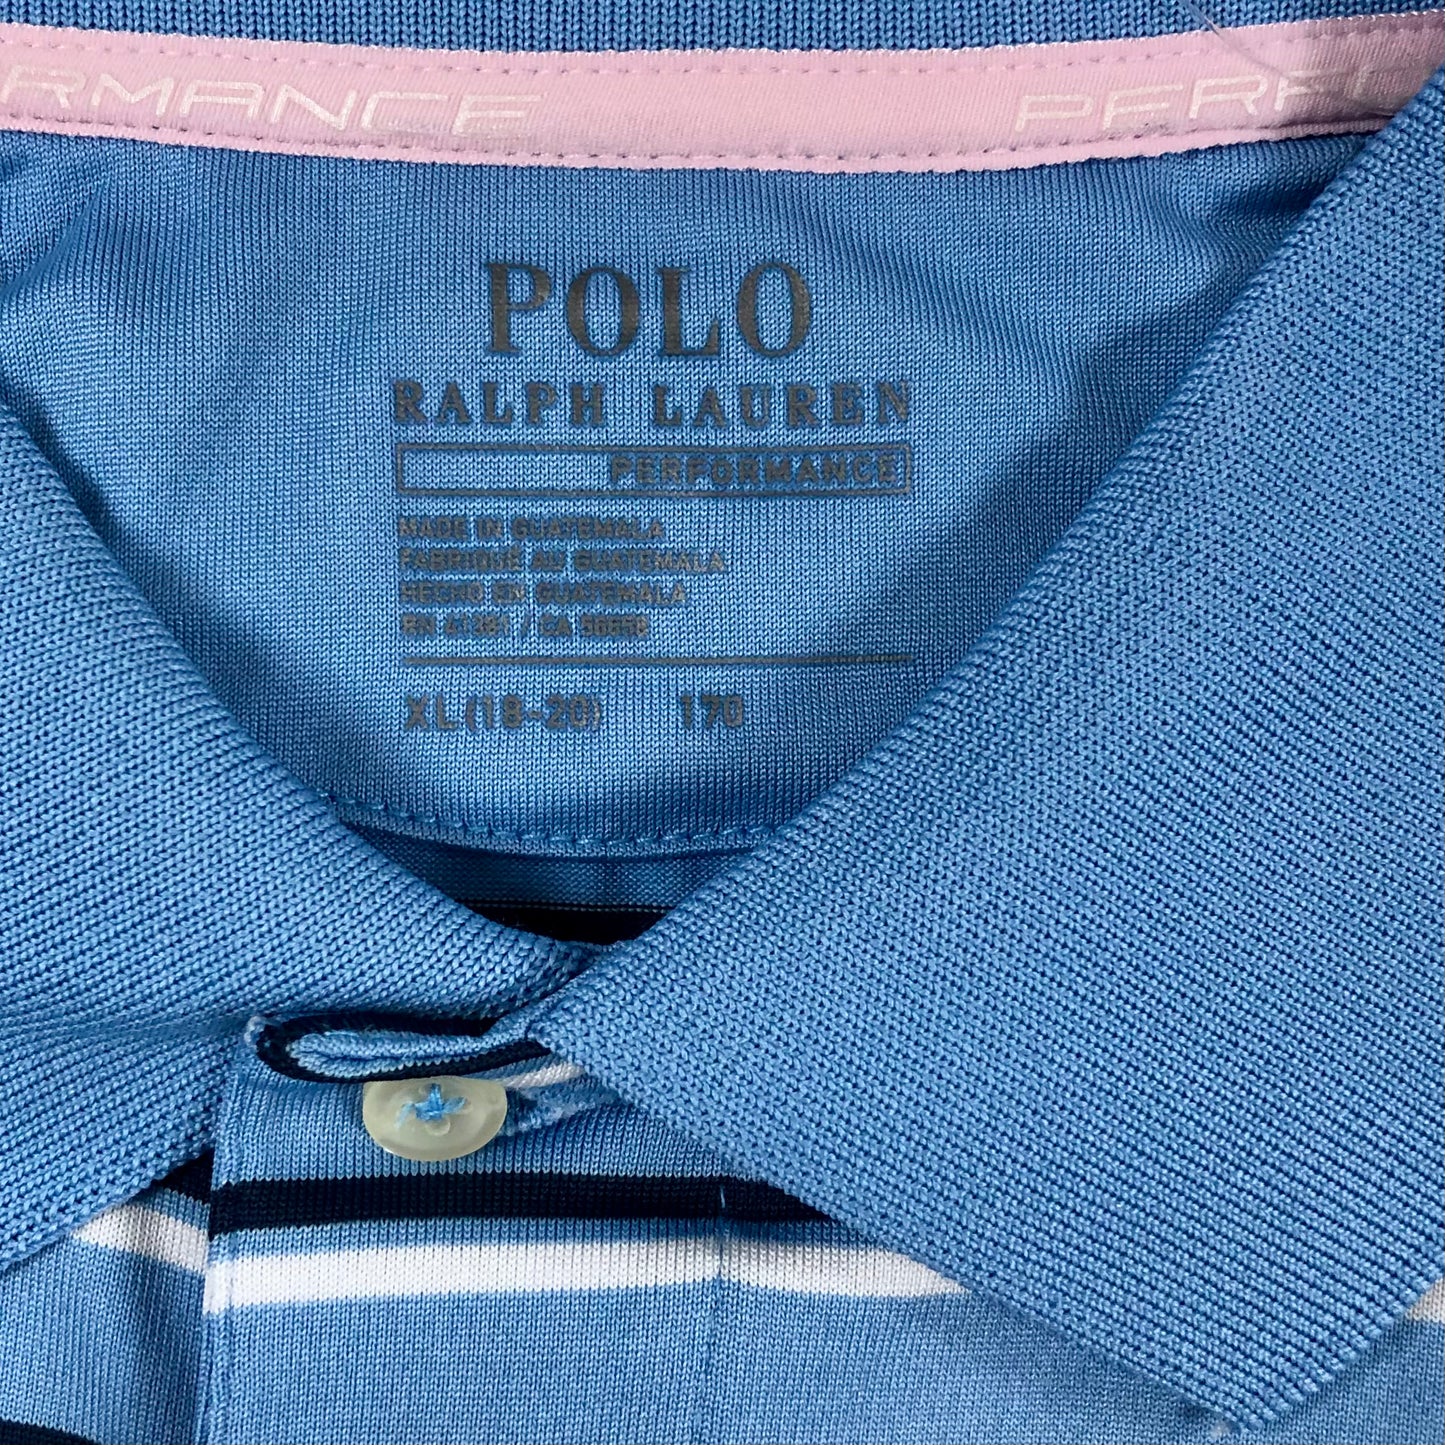 Camiseta Polo Ralph Lauren 🏇🏼 Tela performance color celeste con rayas en negro y blanco Talla S Entalle Regular